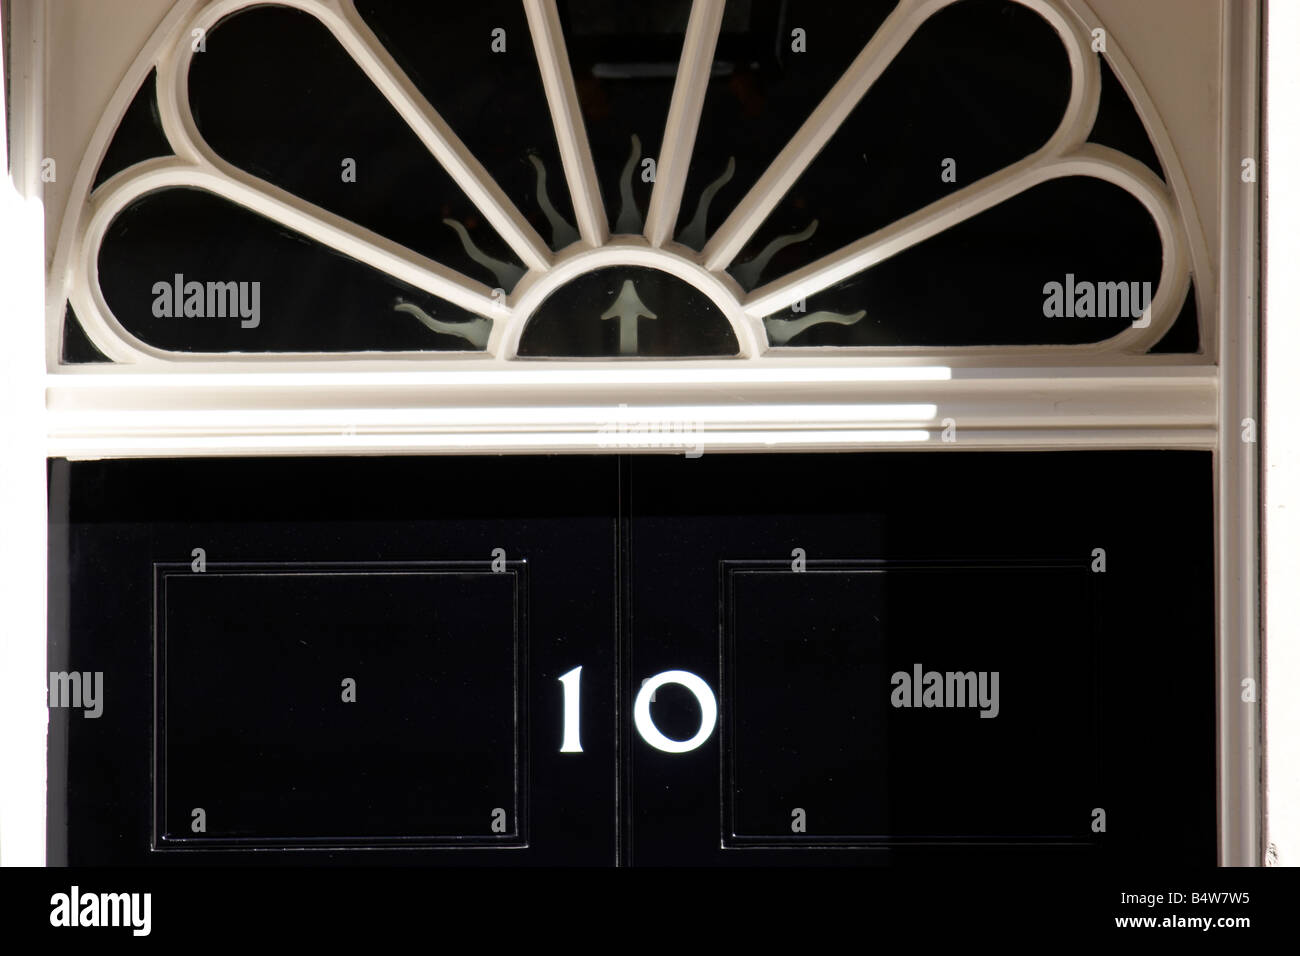 Numéro 10 Downing Street accueil du Premier ministre britannique City of Westminster SW1 London England Banque D'Images